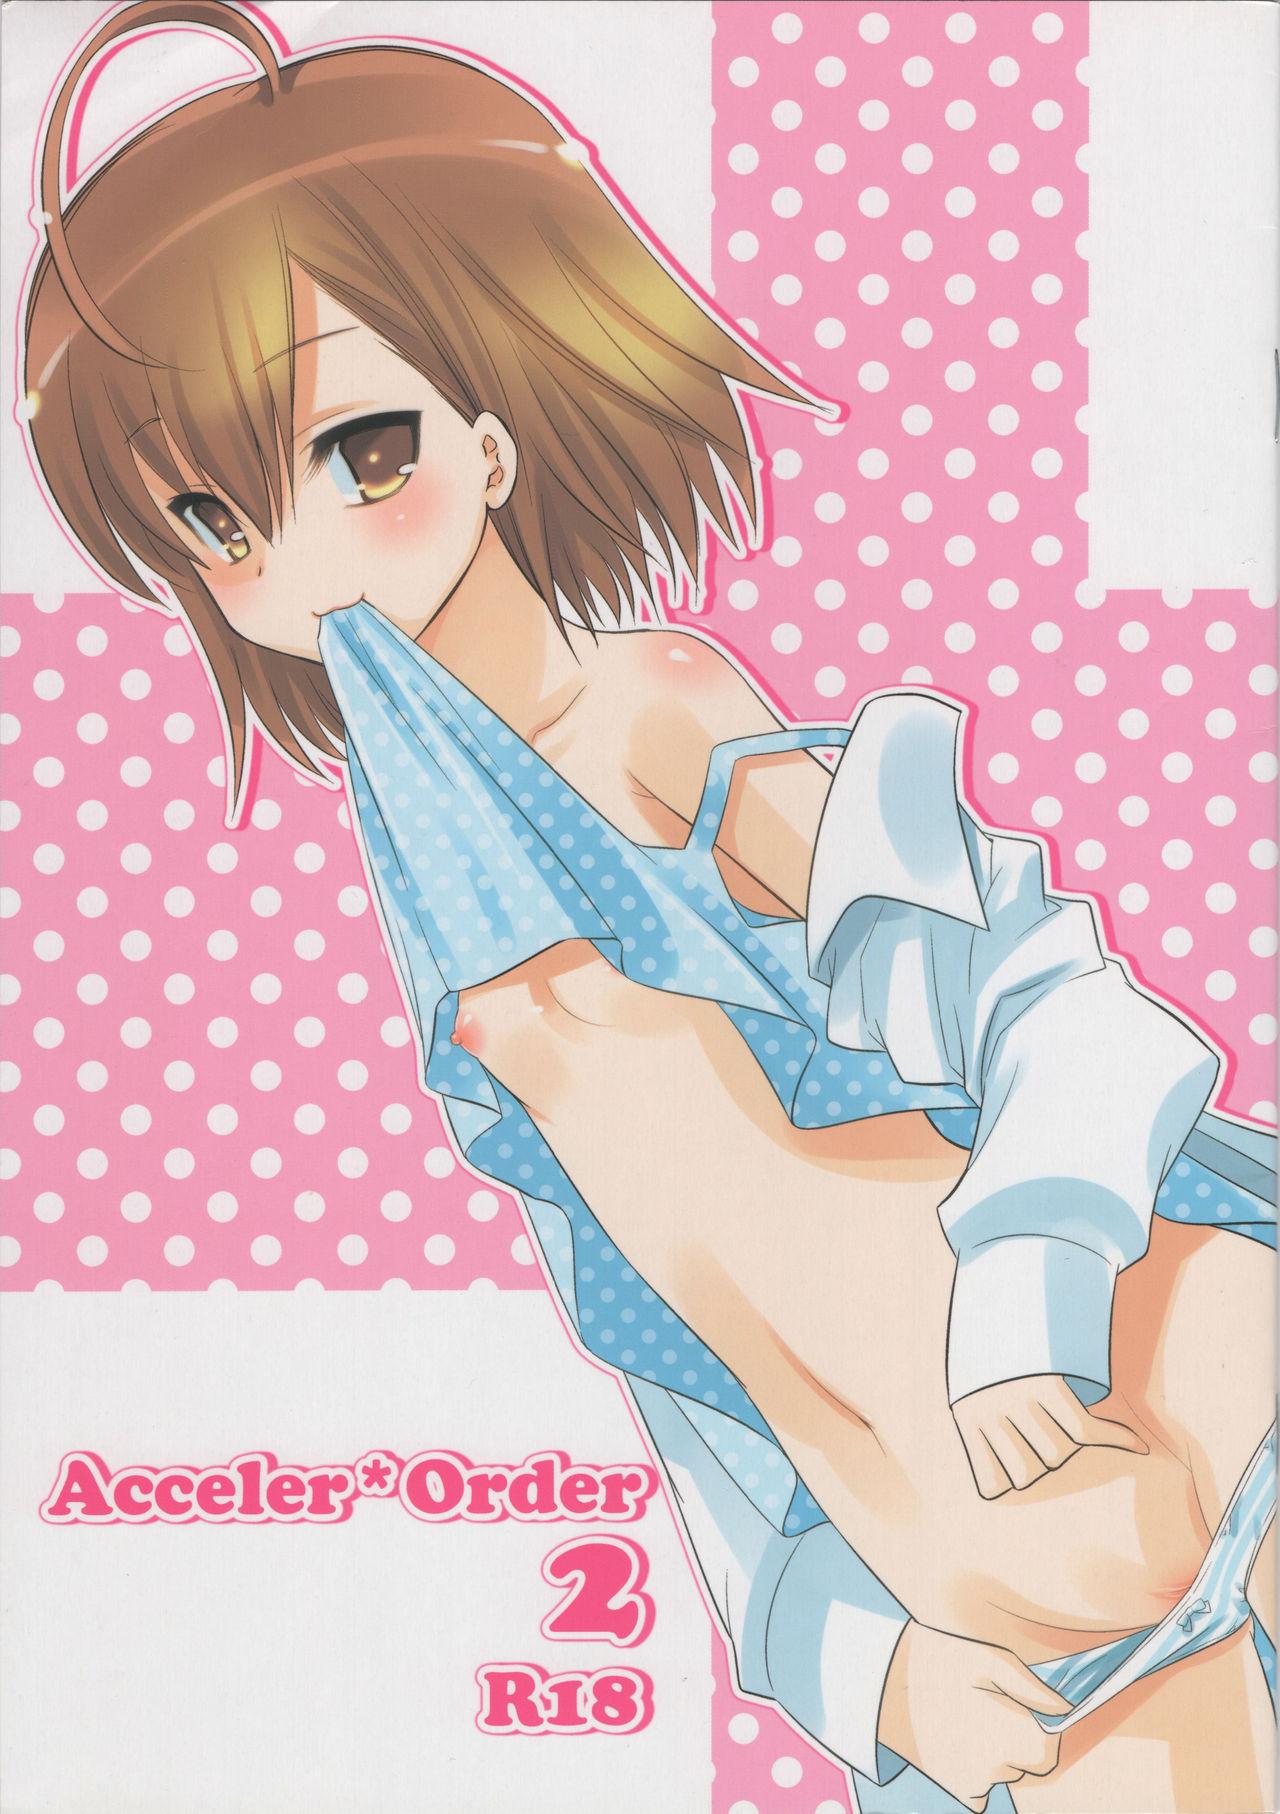 Acceler*Order 2 0